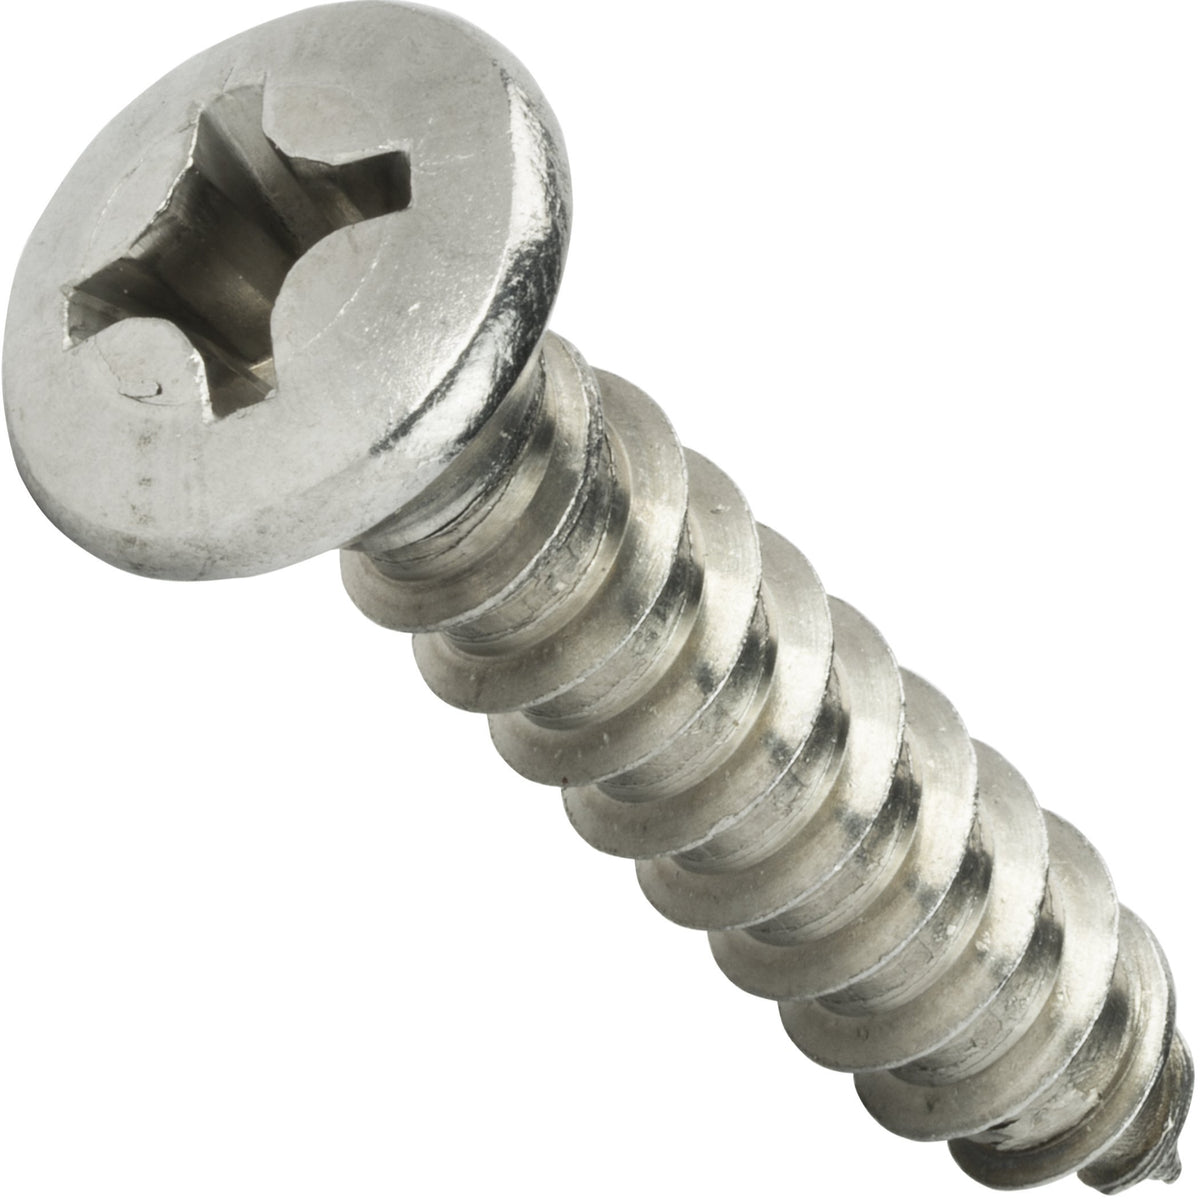 stainless steel screws pricelist